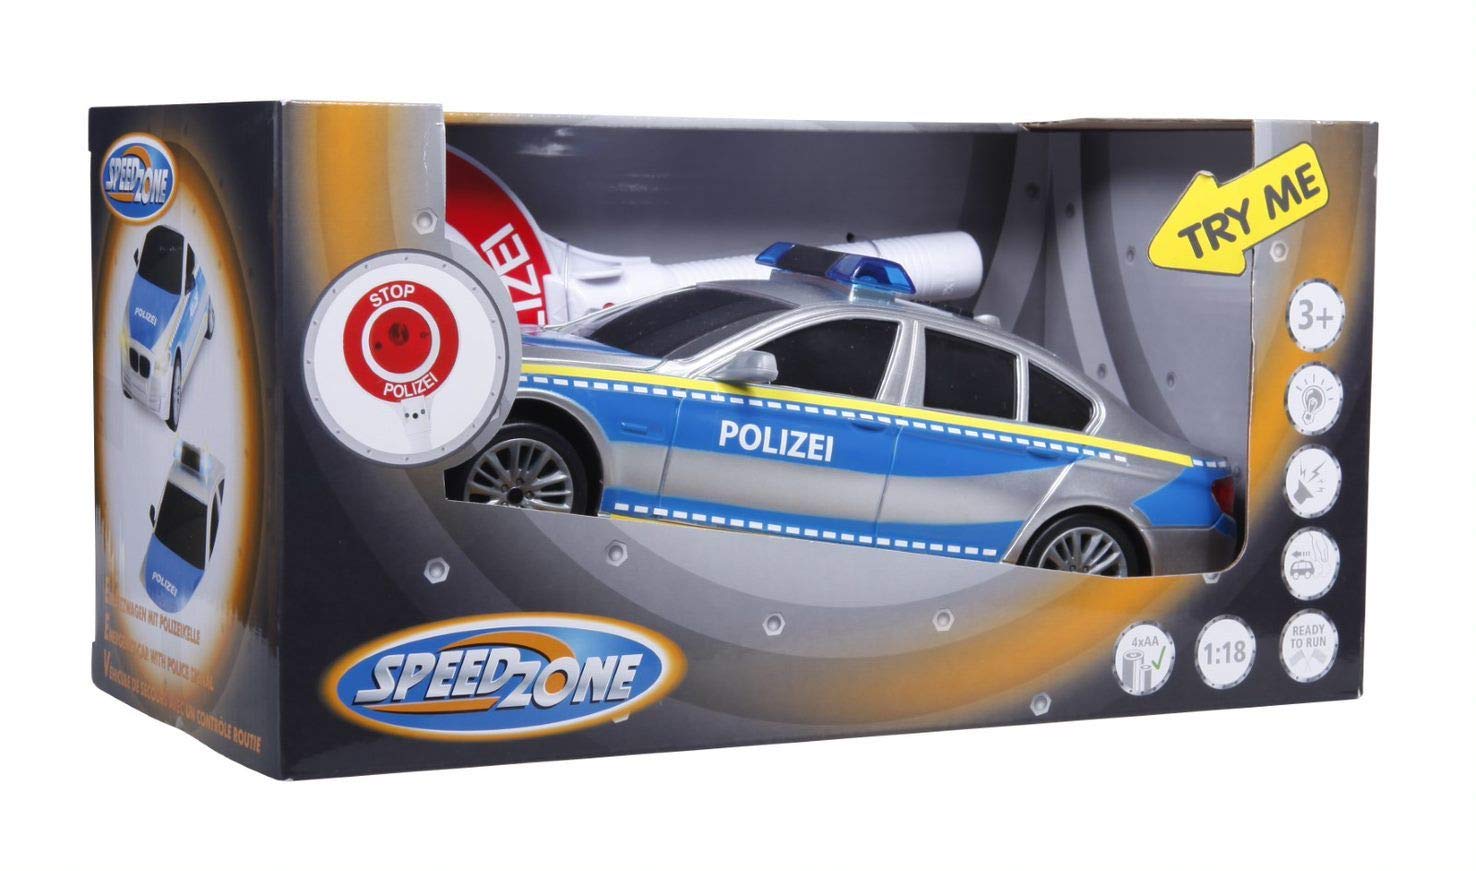 VEDES Großhandel GmbH - Ware 30801806 Speed Zone Polizeiauto mit Polizeikelle, Silber